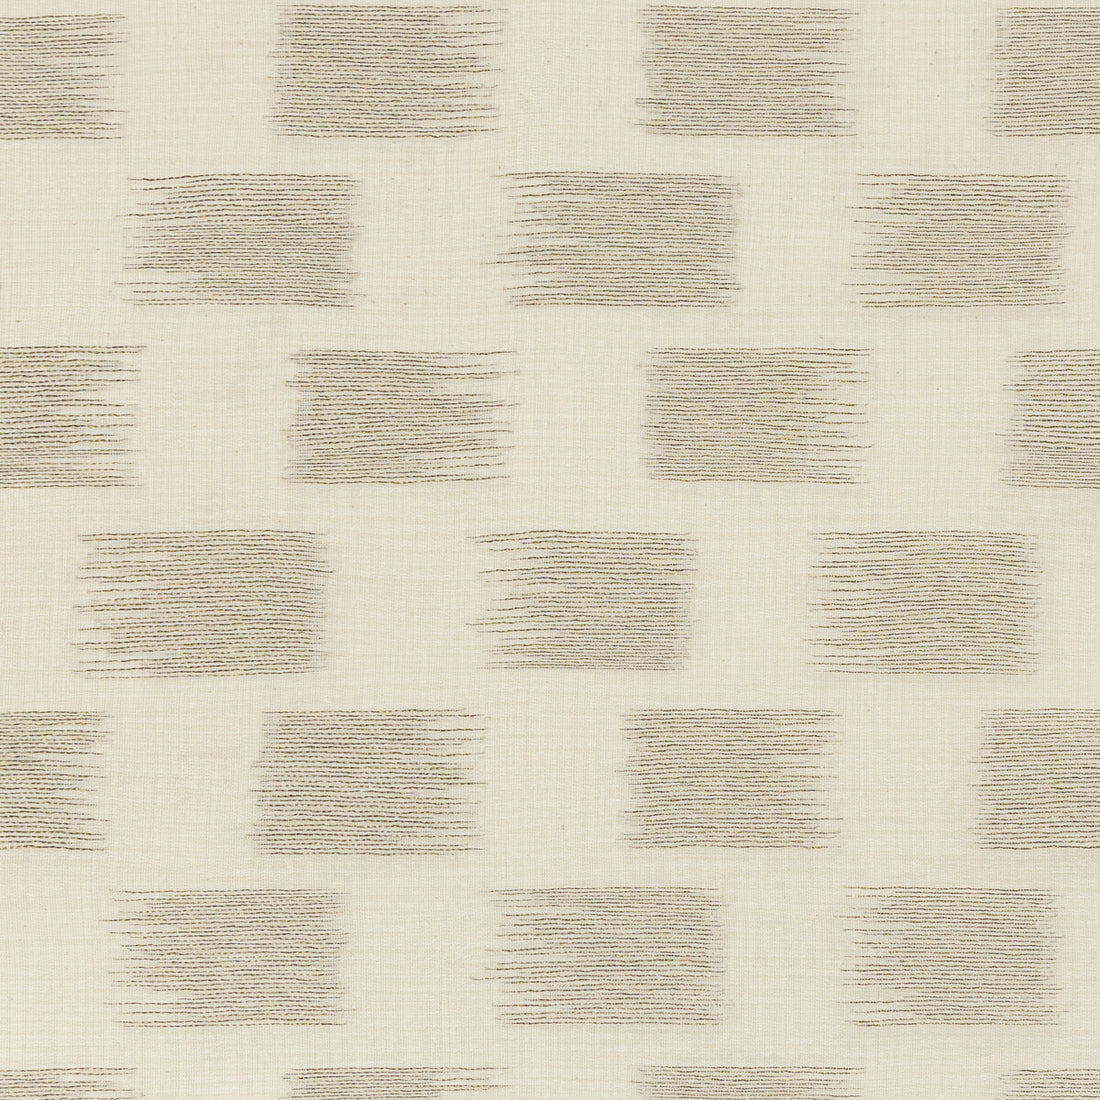 Kravet Basics fabric in 4696-16 color - pattern 4696.16.0 - by Kravet Basics